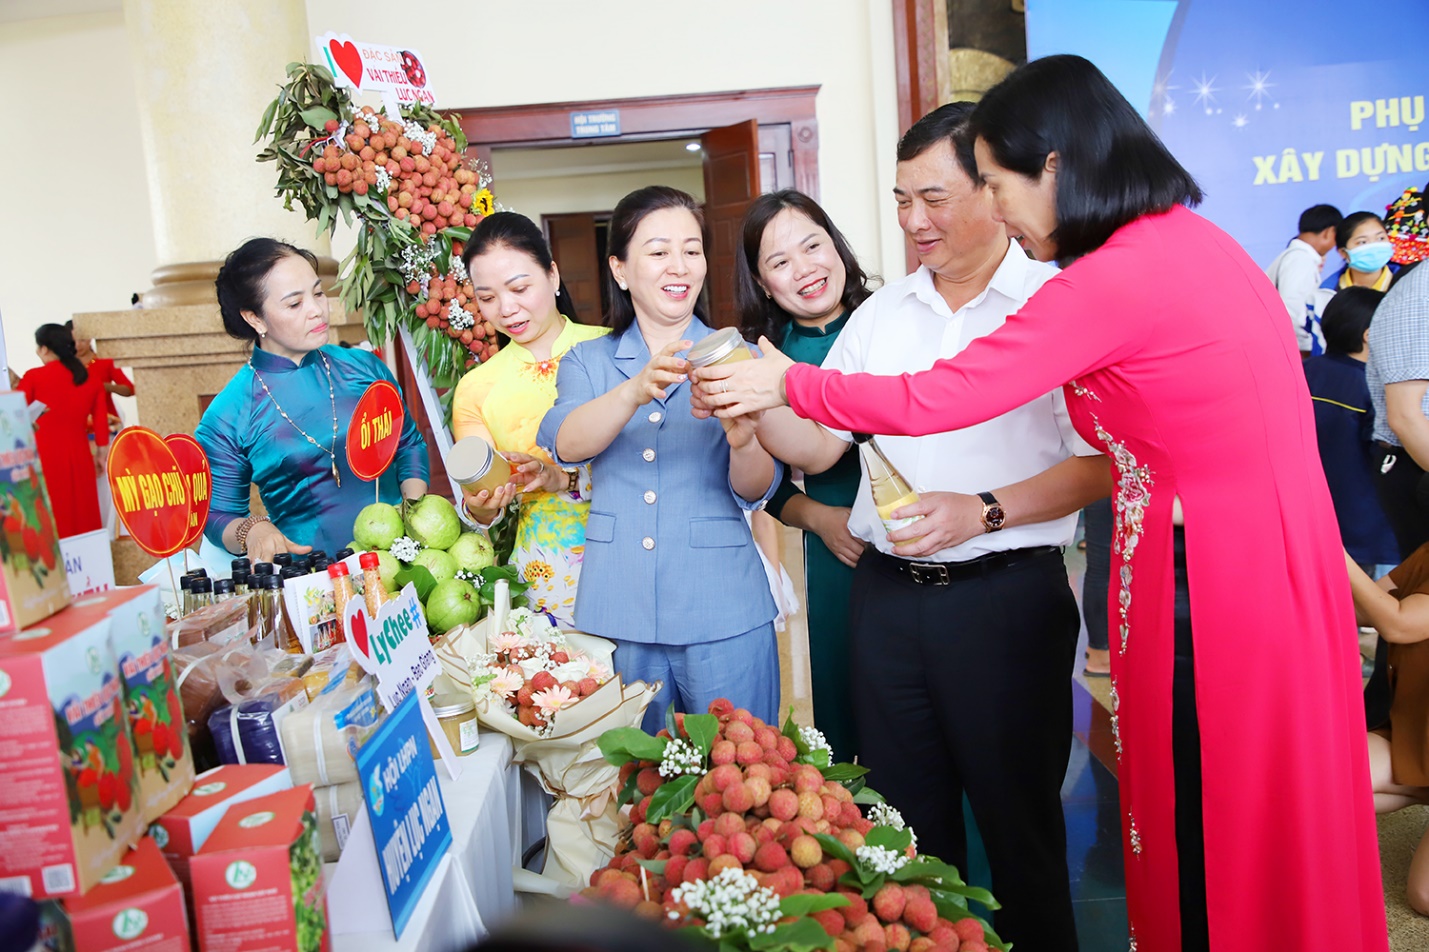 Phụ nữ Bắc Giang tích cực phát triển sản phẩm OCOP, cùng nhau làm giàu - Ảnh 1.